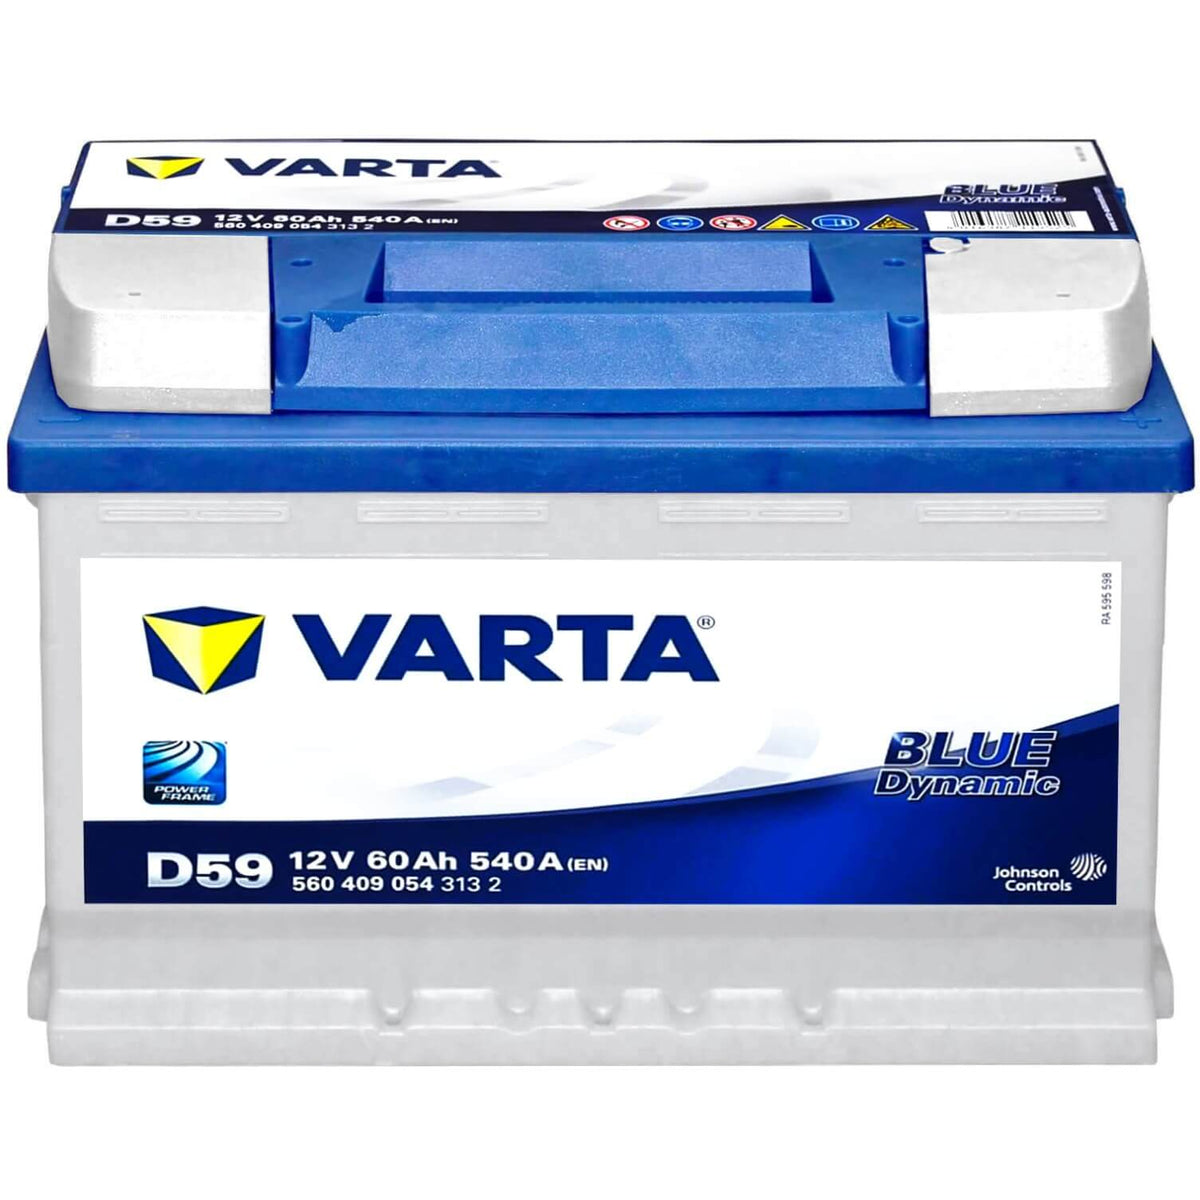 VARTA BLUE Dynamic 60Ah, 12V